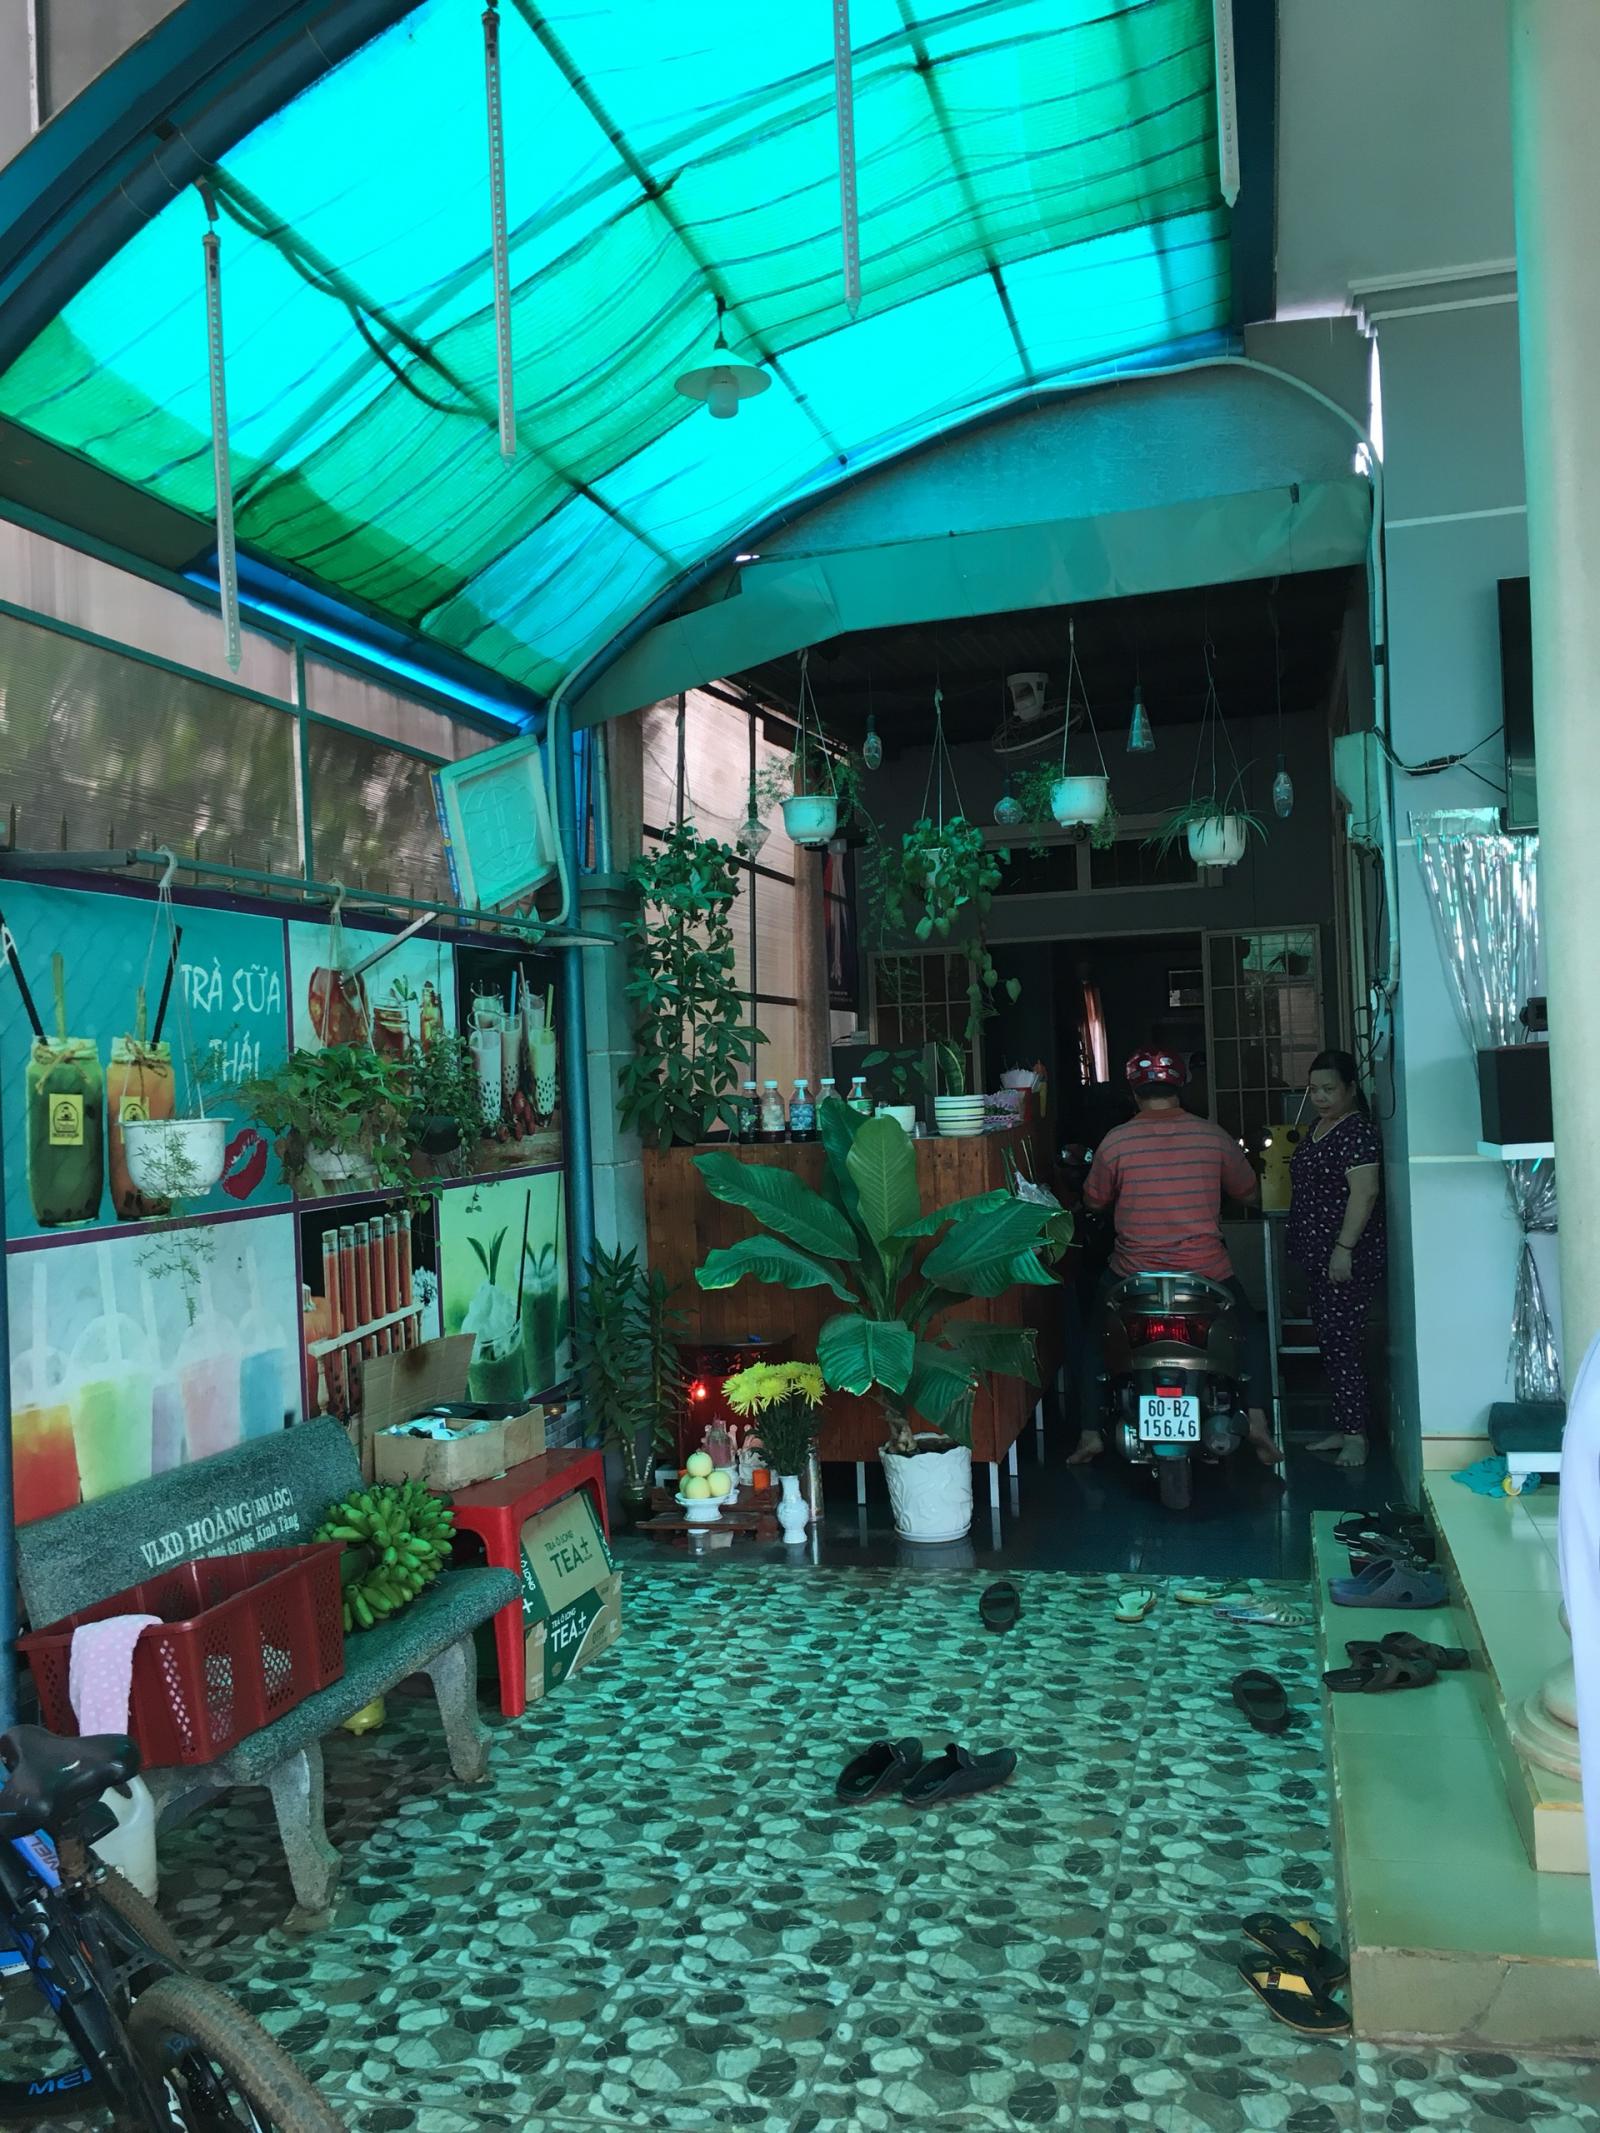 Bán nhà chính chủ còn mới, hiện đang kinh doanh coffee tại phường Xuân Lập, Tp. Long Khánh, Đồng Nai 10451100